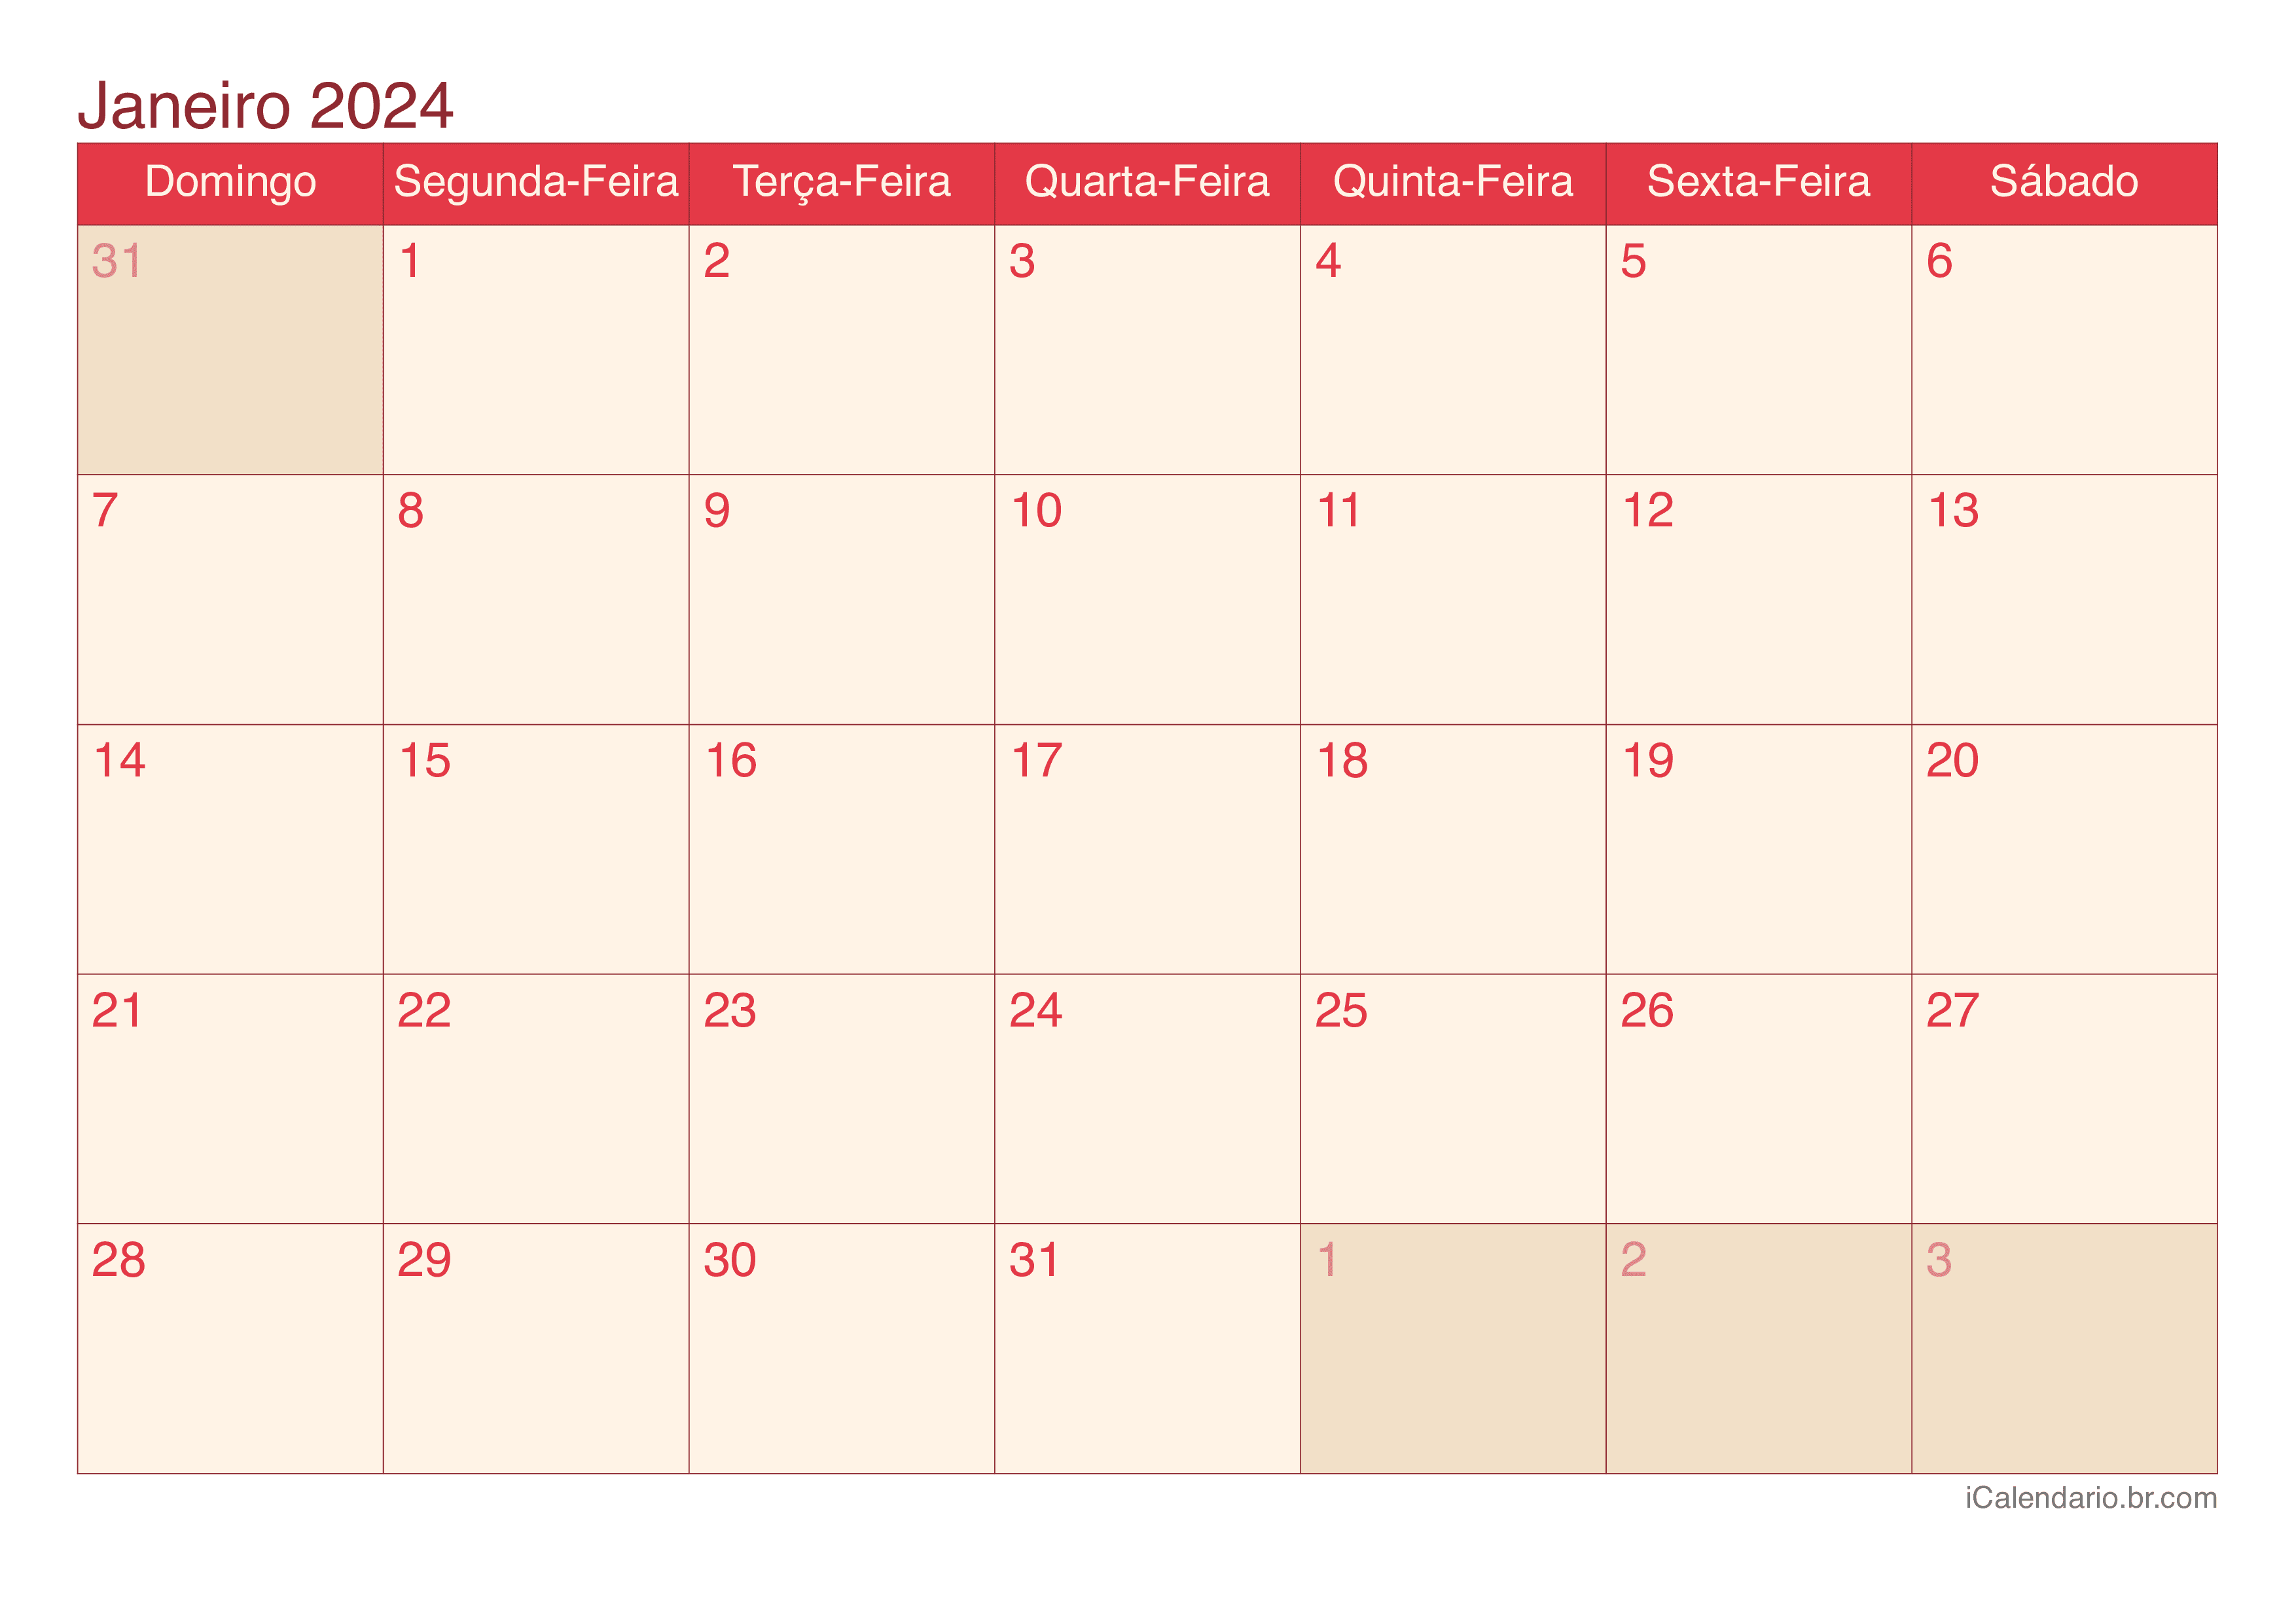 Calendário de janeiro 2024 - Cherry